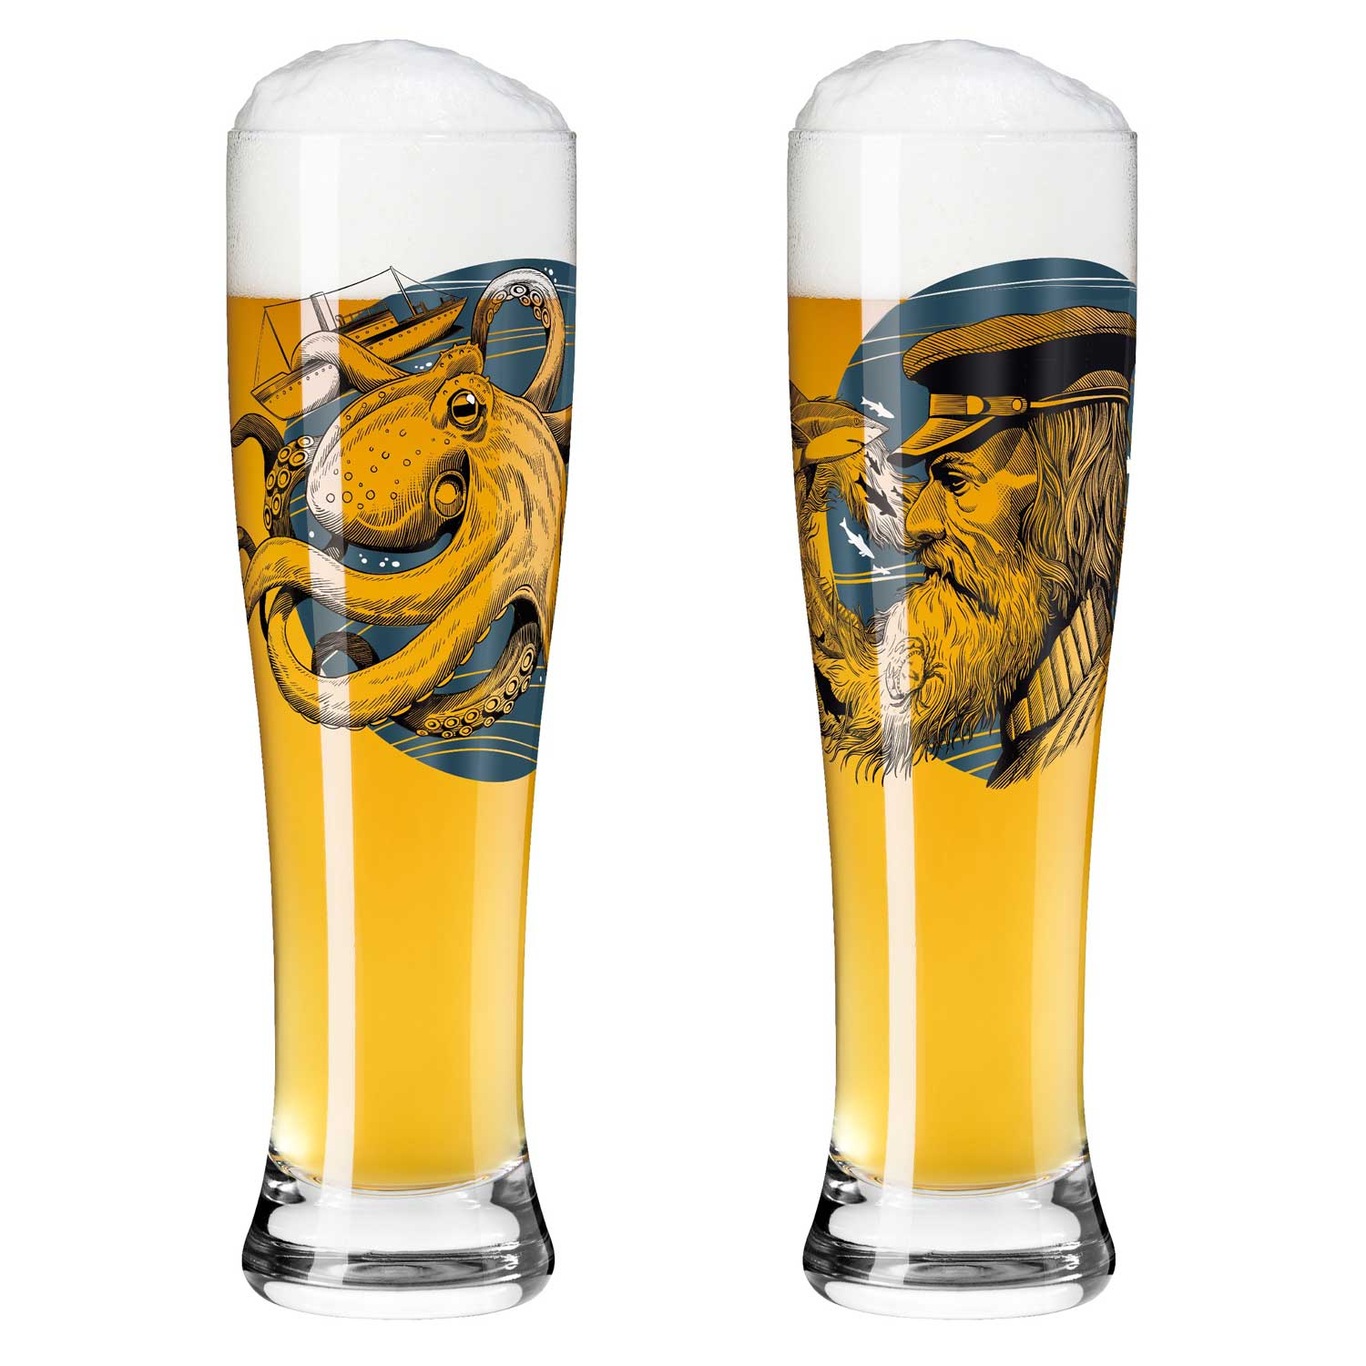 Brauchzeit Beer Glass 2-pack, #9 & 10